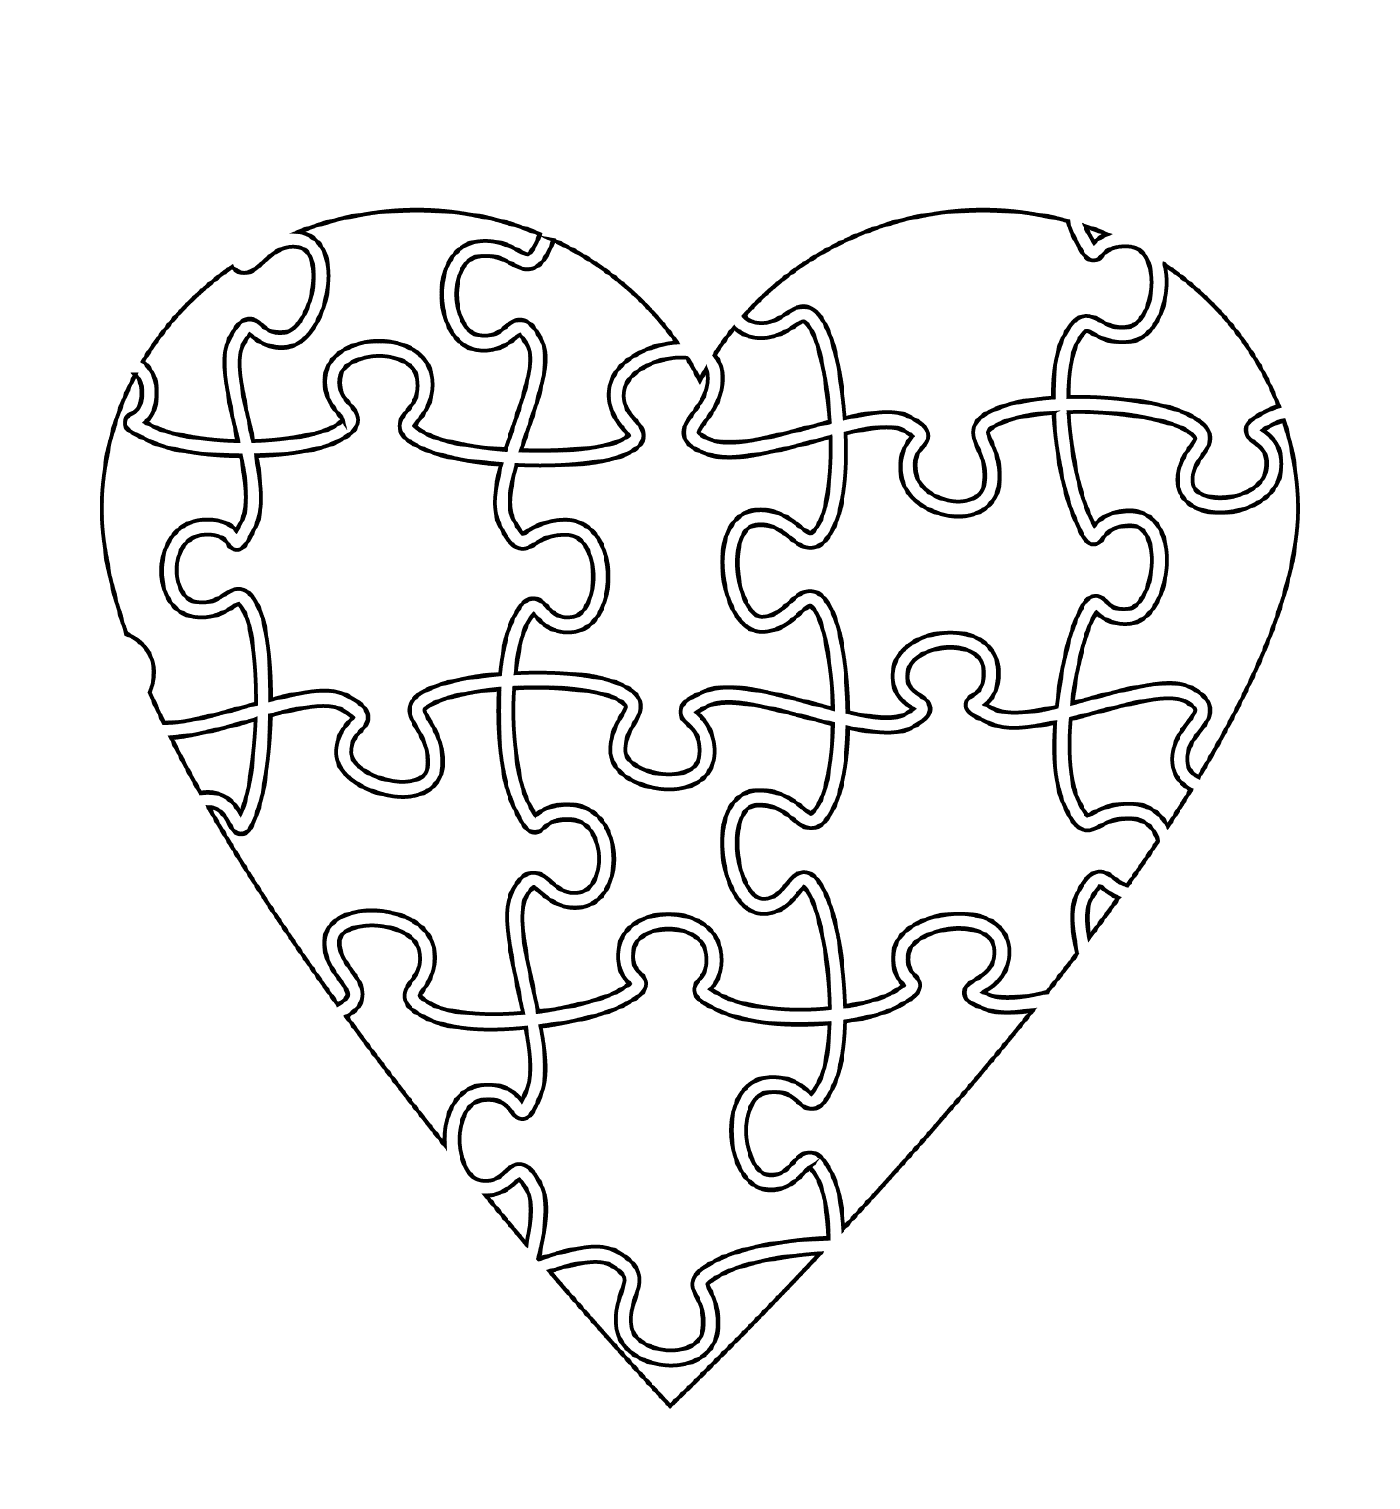  Herz in Form eines charmanten Puzzles 